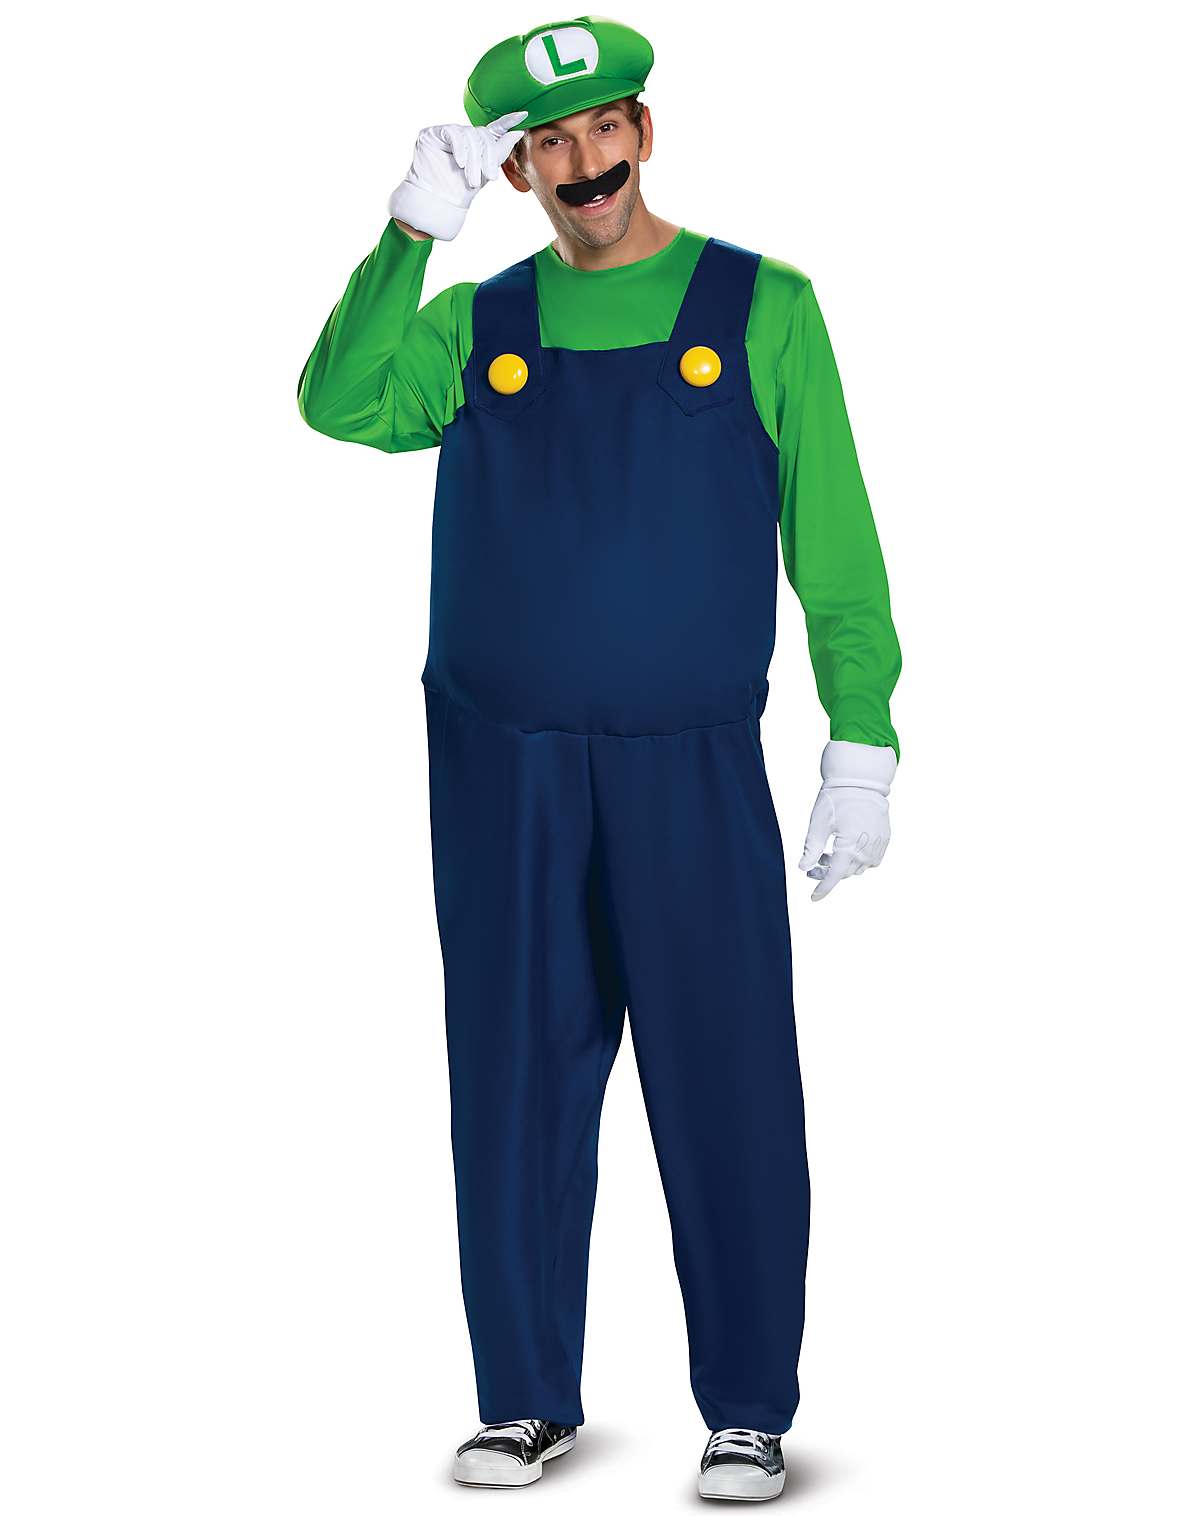 Plus size Luigi costume - Super Mario Bros.